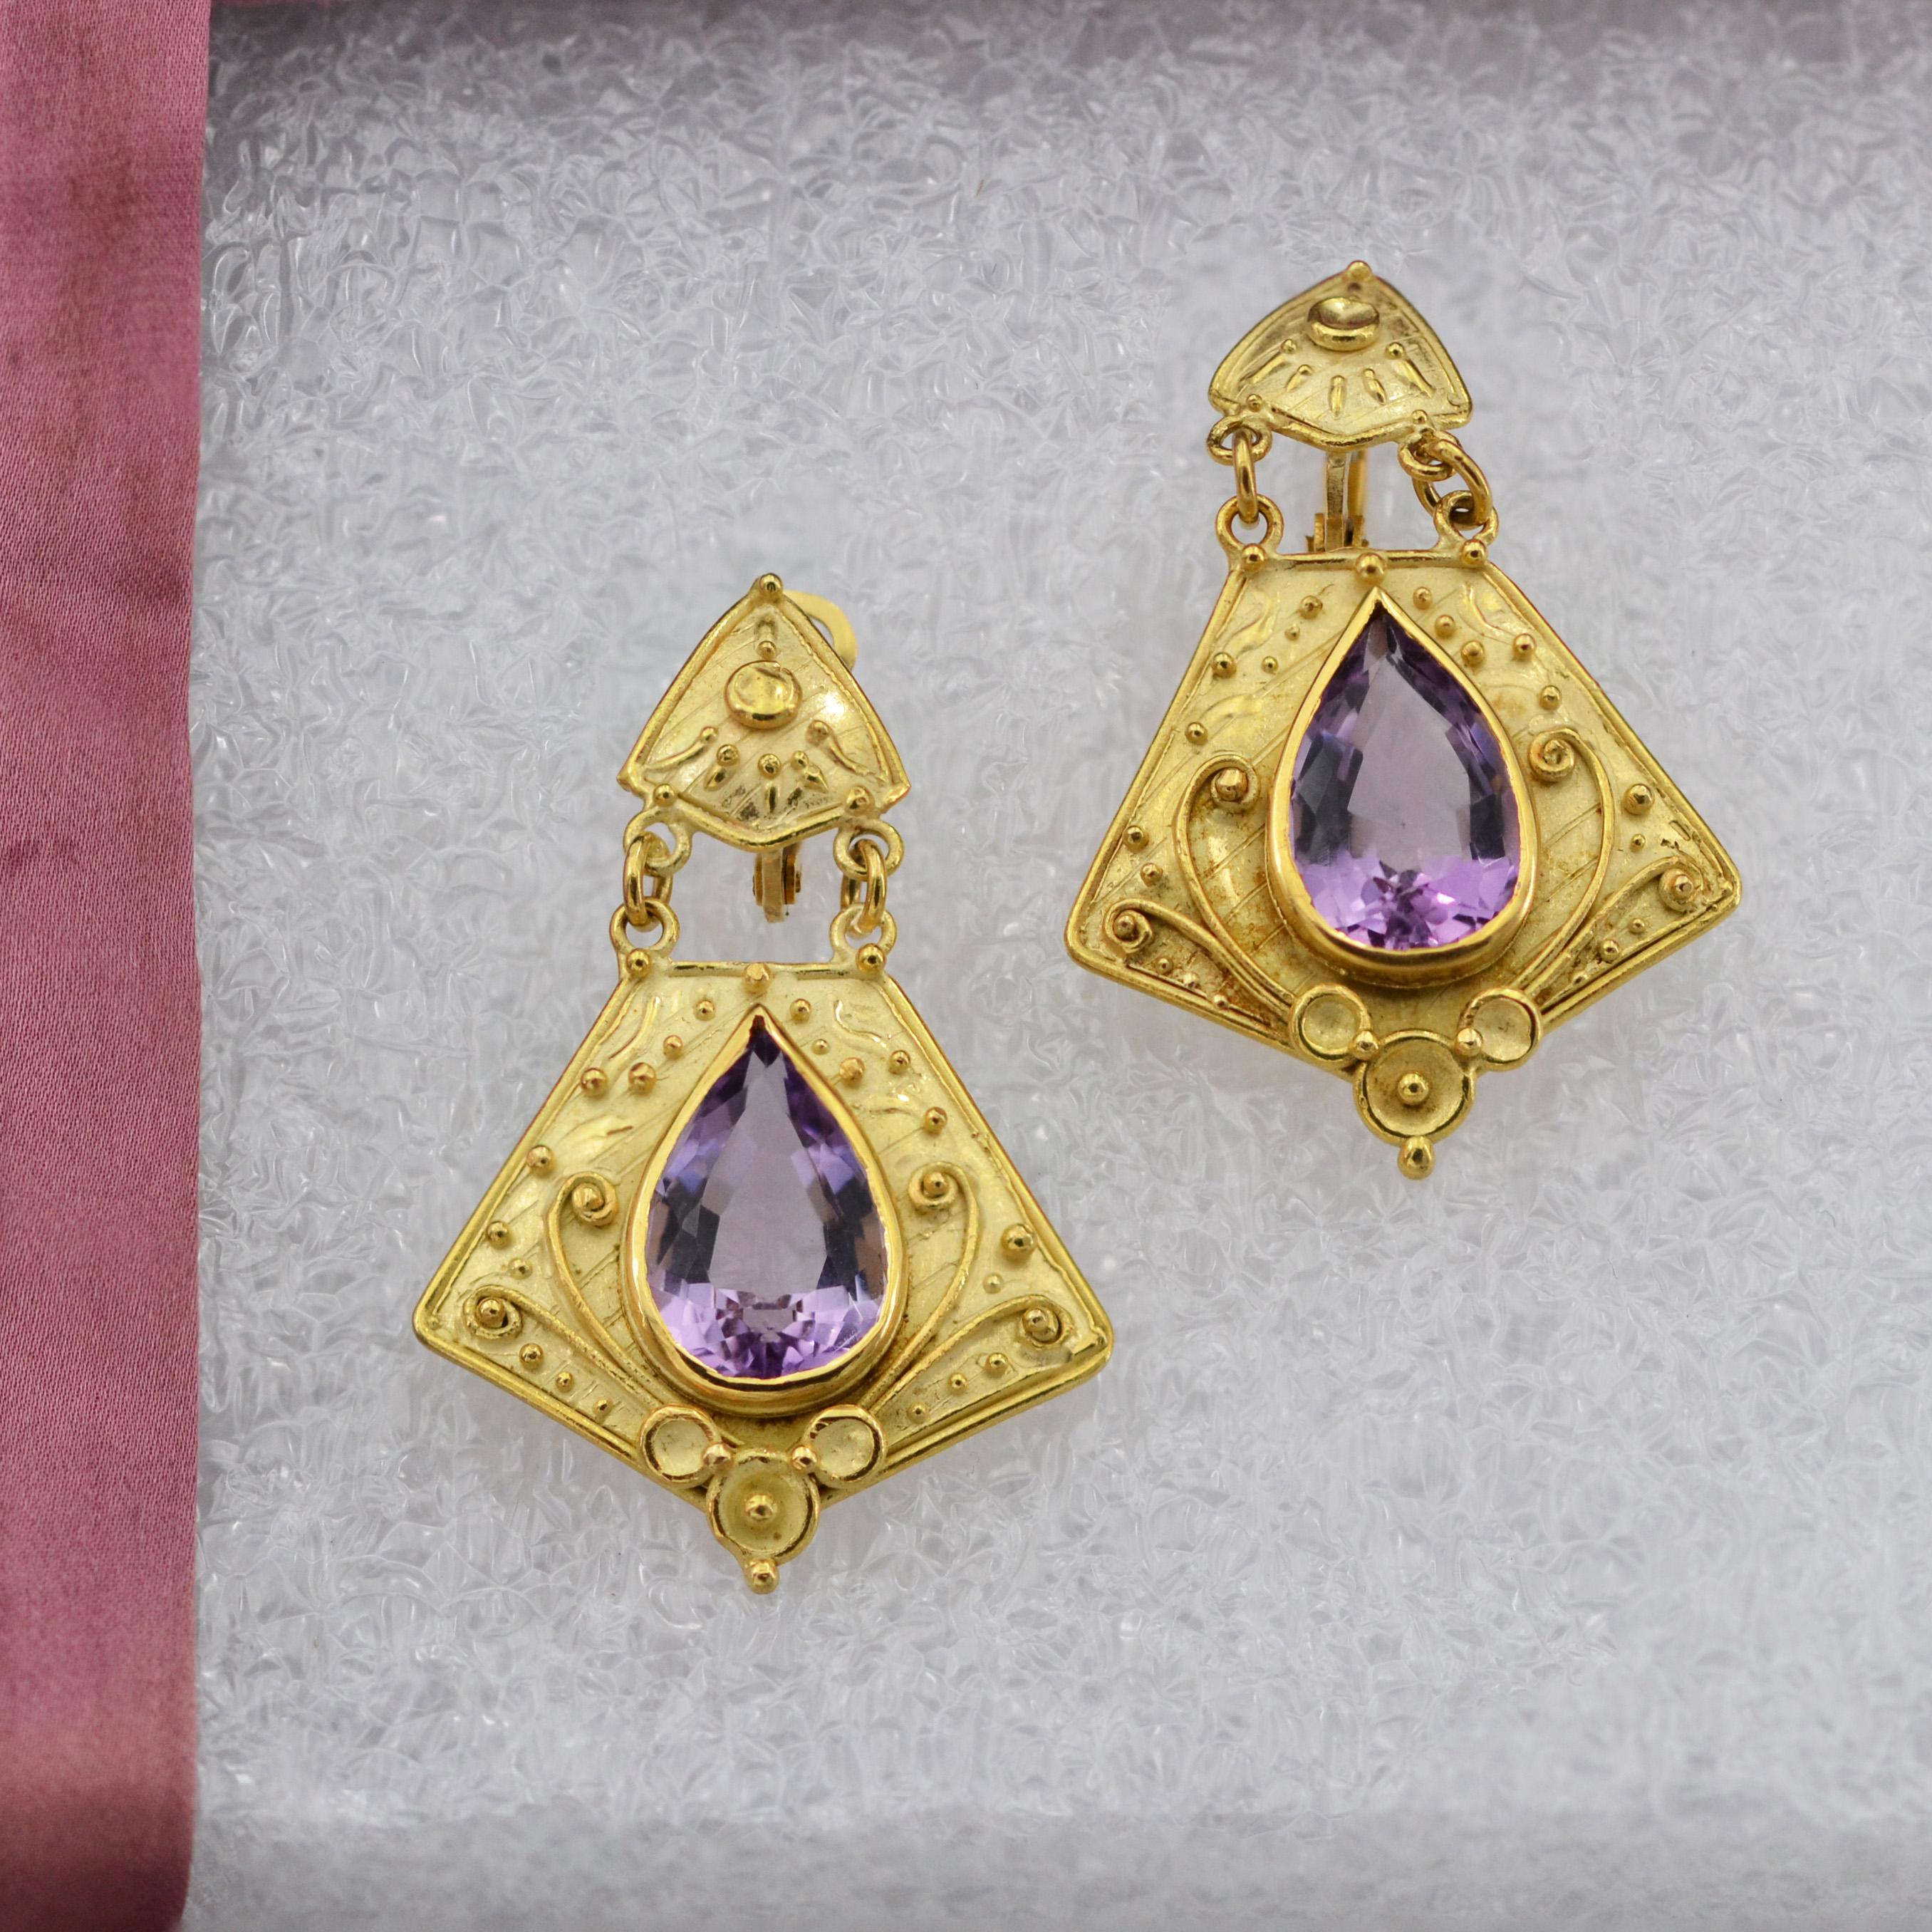 1960s style earrings